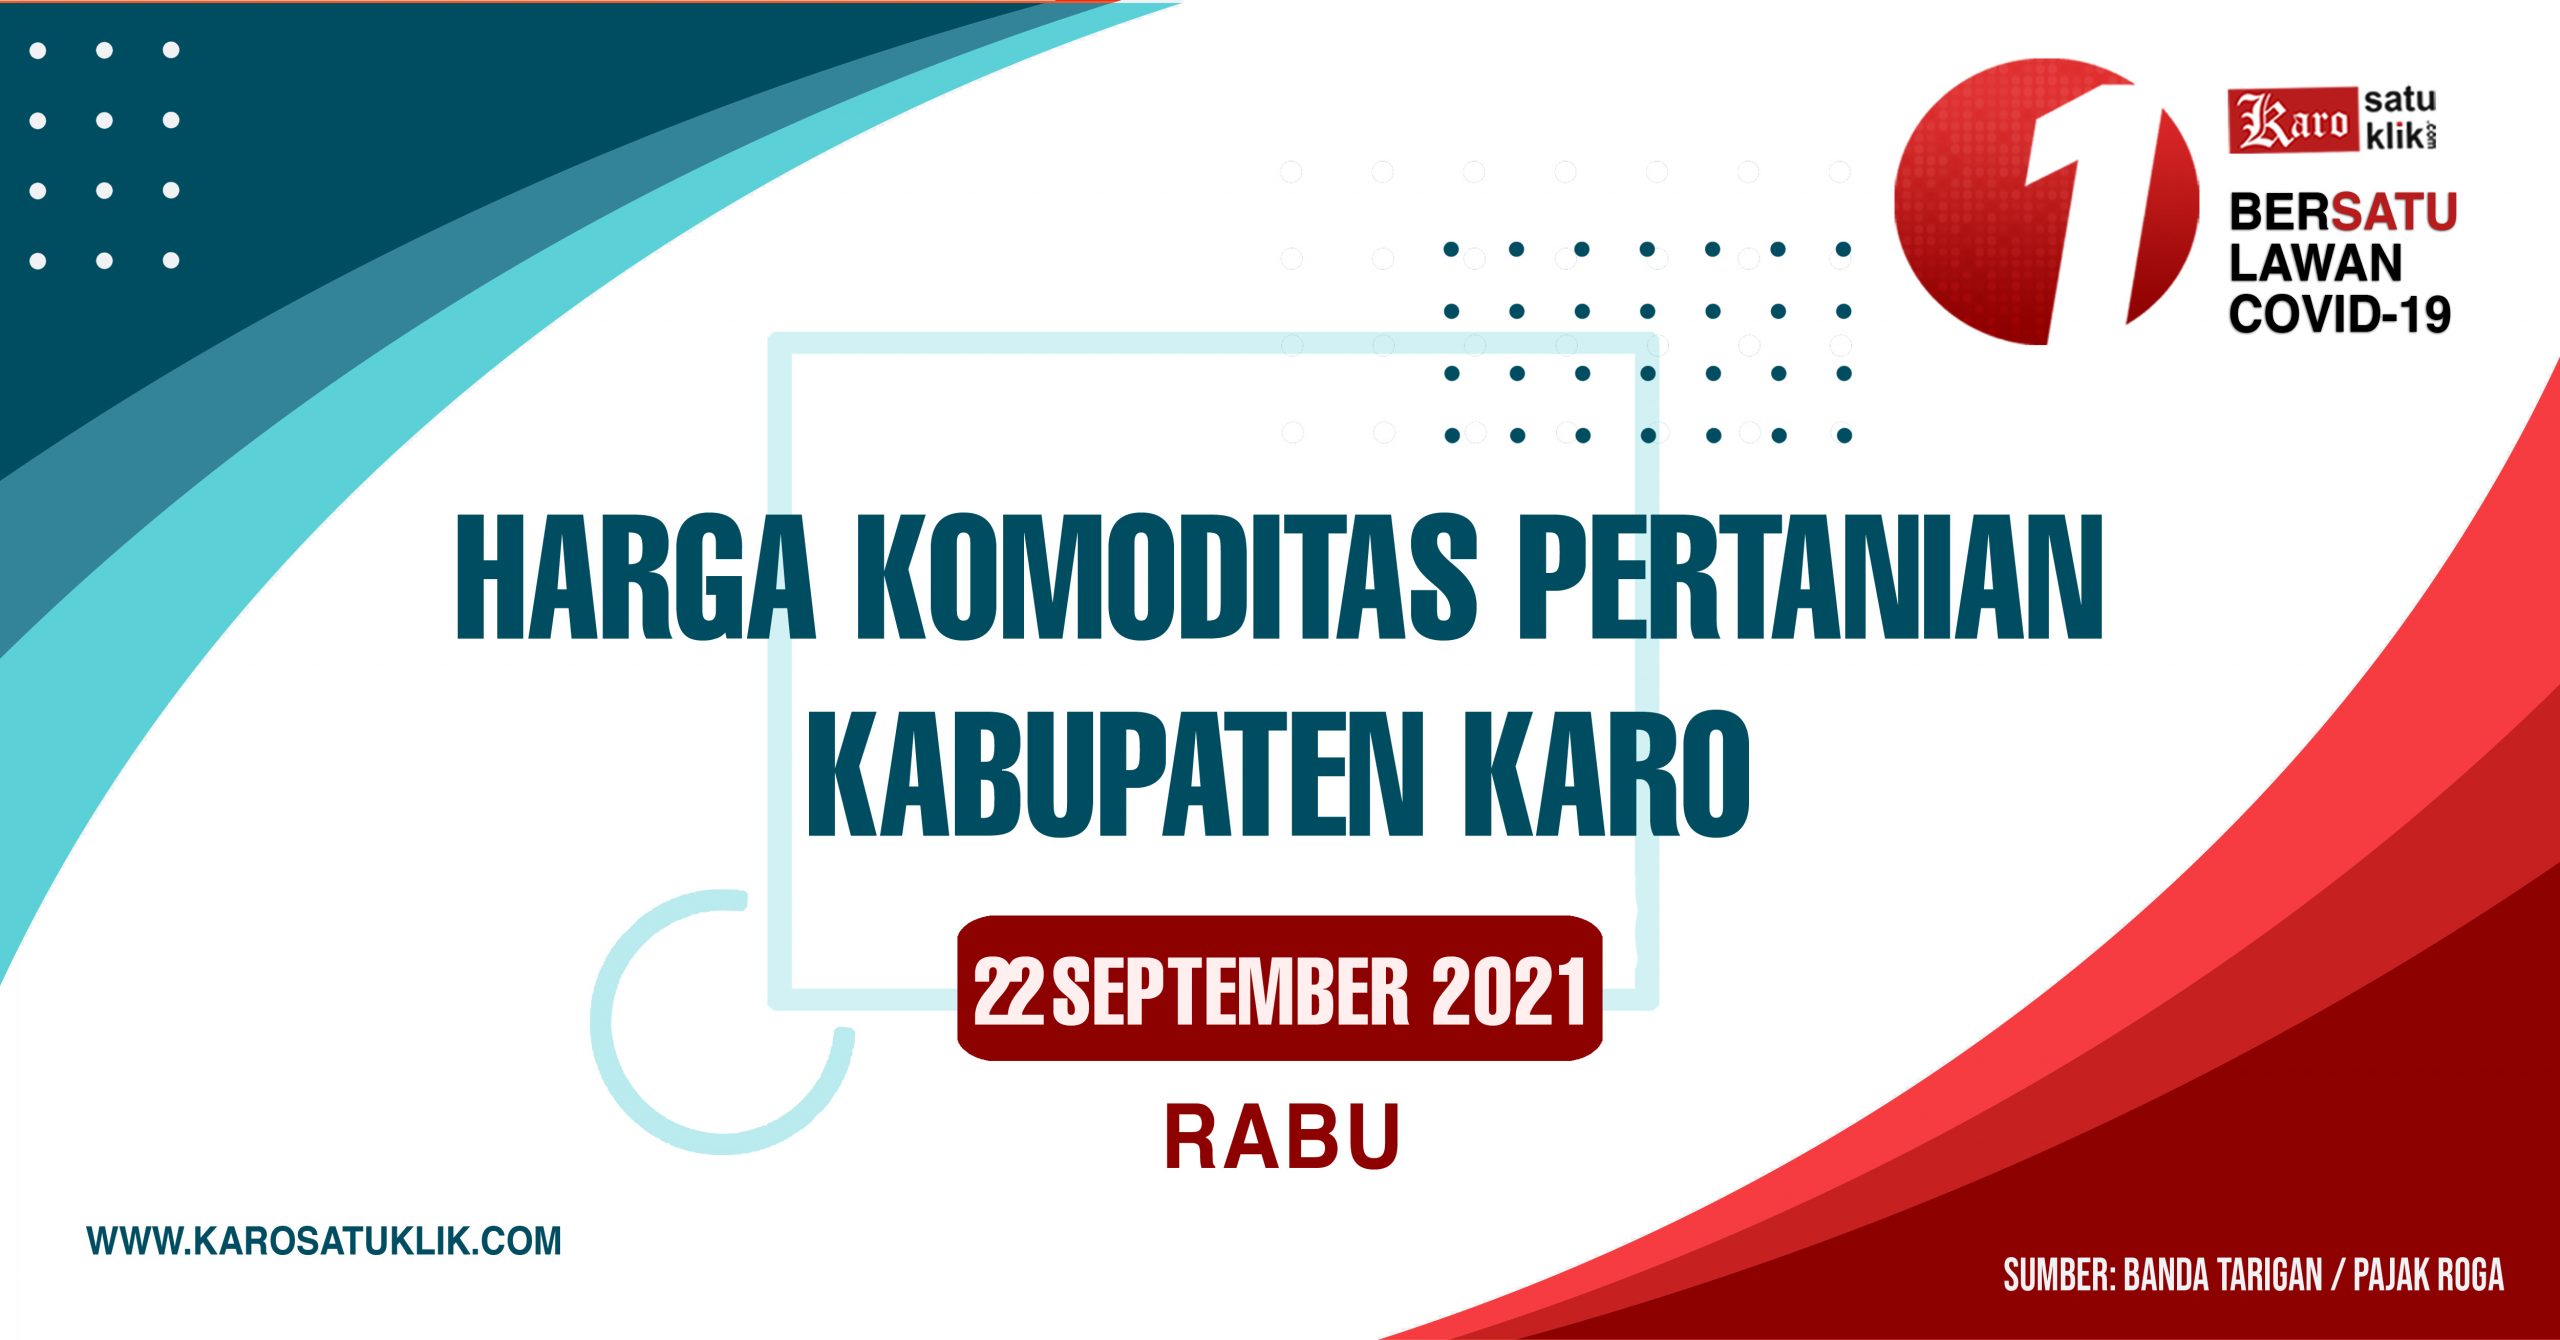 Daftar Harga Komoditas Pertanian Kabupaten Karo, 22 September 2021